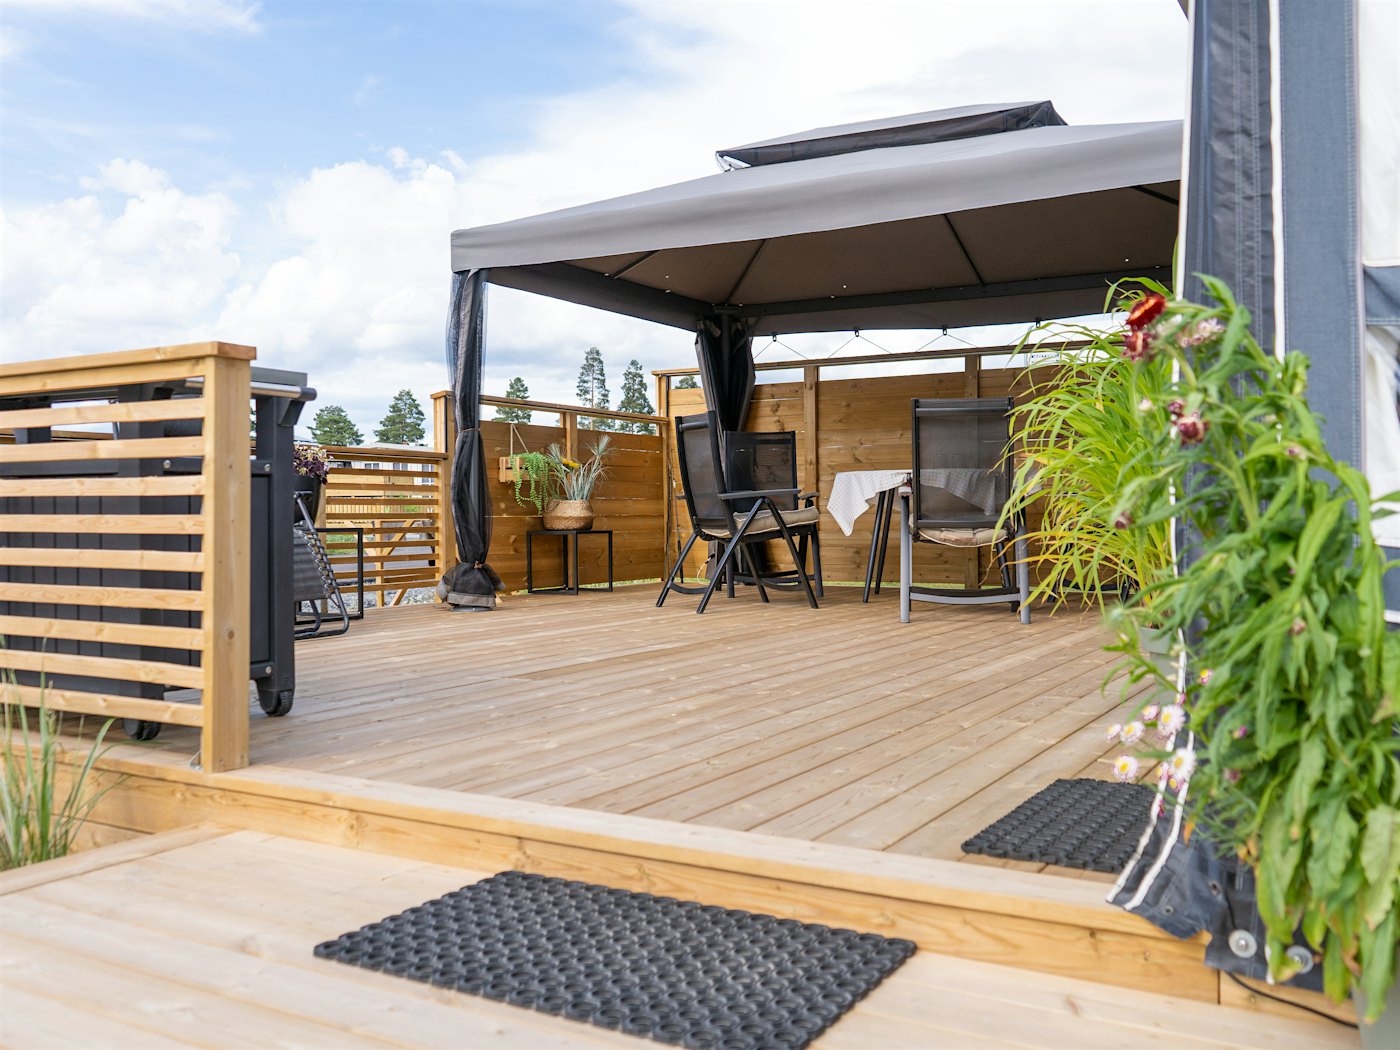 Terrasse tilhørende fastplass på campingplass. Utemøbler og planter på plattengen. Foto